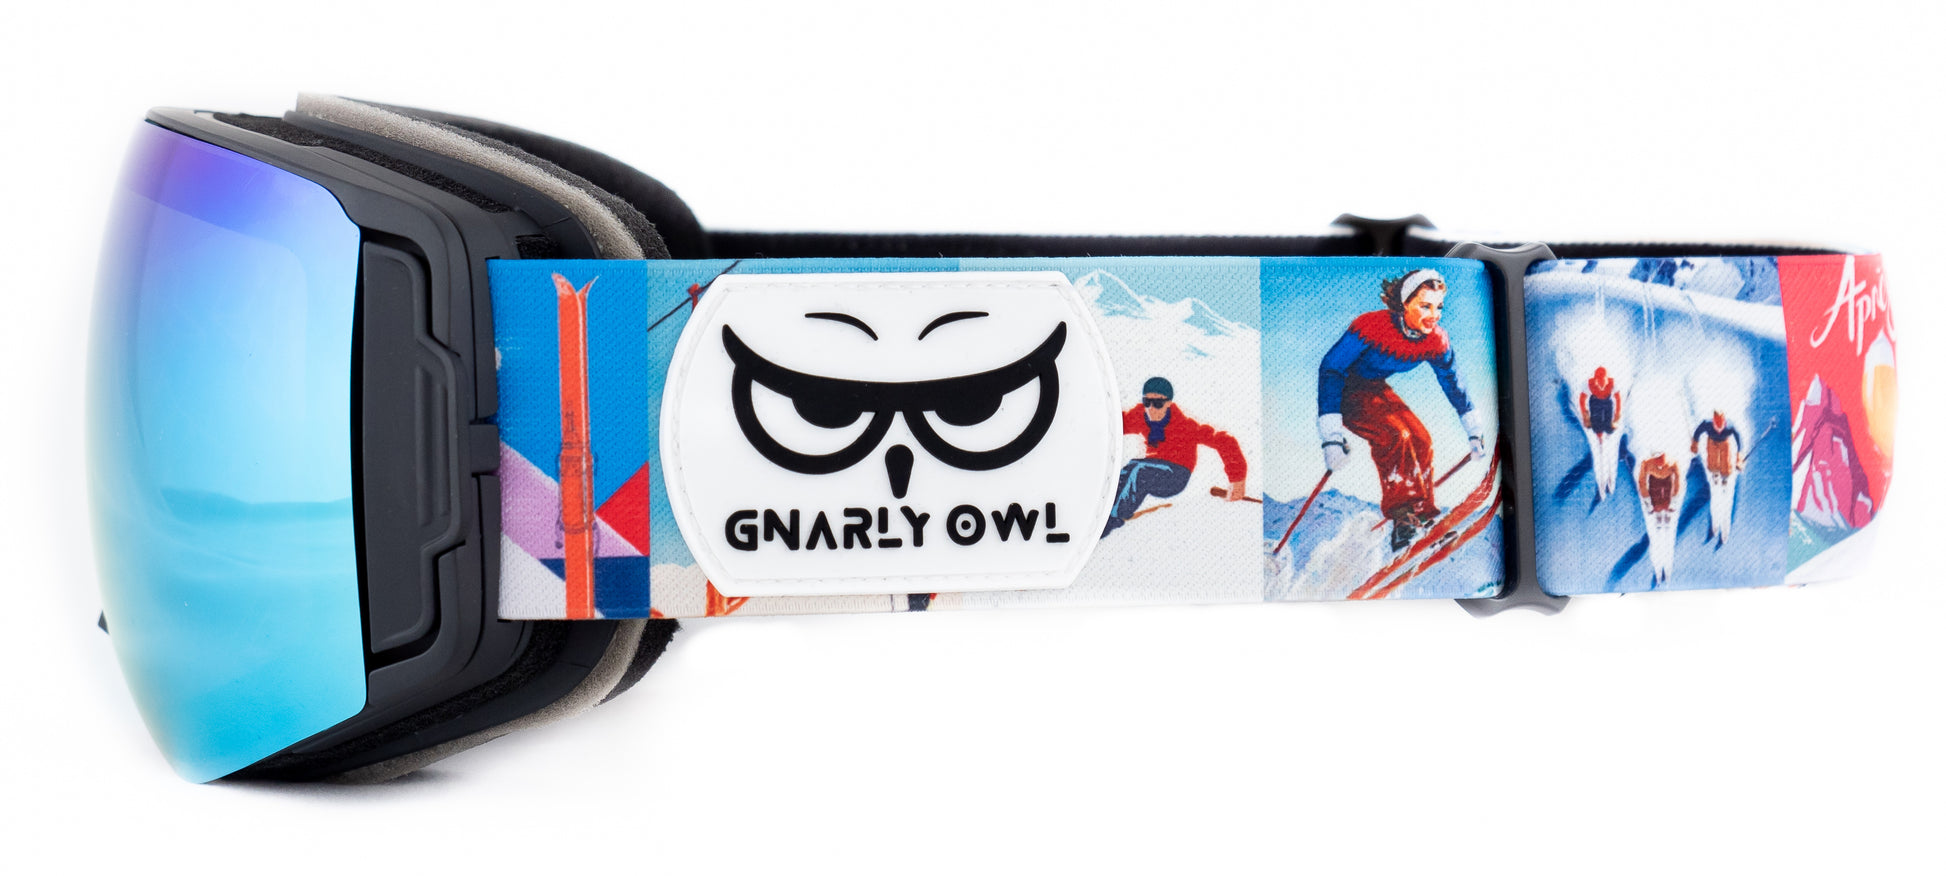 Gnarly Owl polarizační lyžařské snowboardové skialpové splitboardové brýle česká značka ledovcově modrý zrcadlový REVO zorník magnetické výměnné zorníky bezrámečkový design gumové logo sova vintage retro pásek pivo ženská gondola lanovka